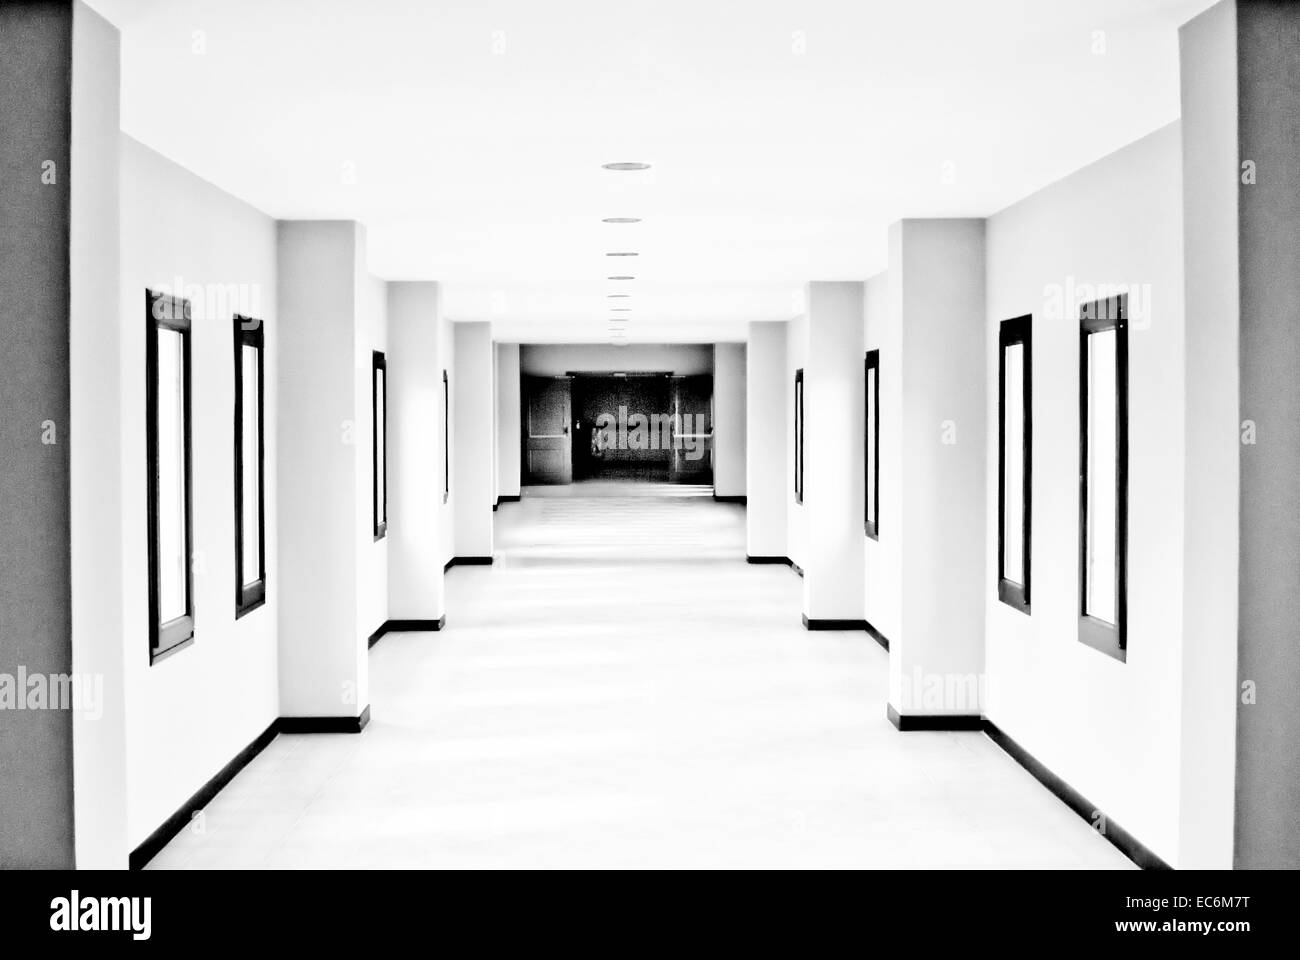 Passage, langen Korridor, Fenster Stockfotografie - Alamy